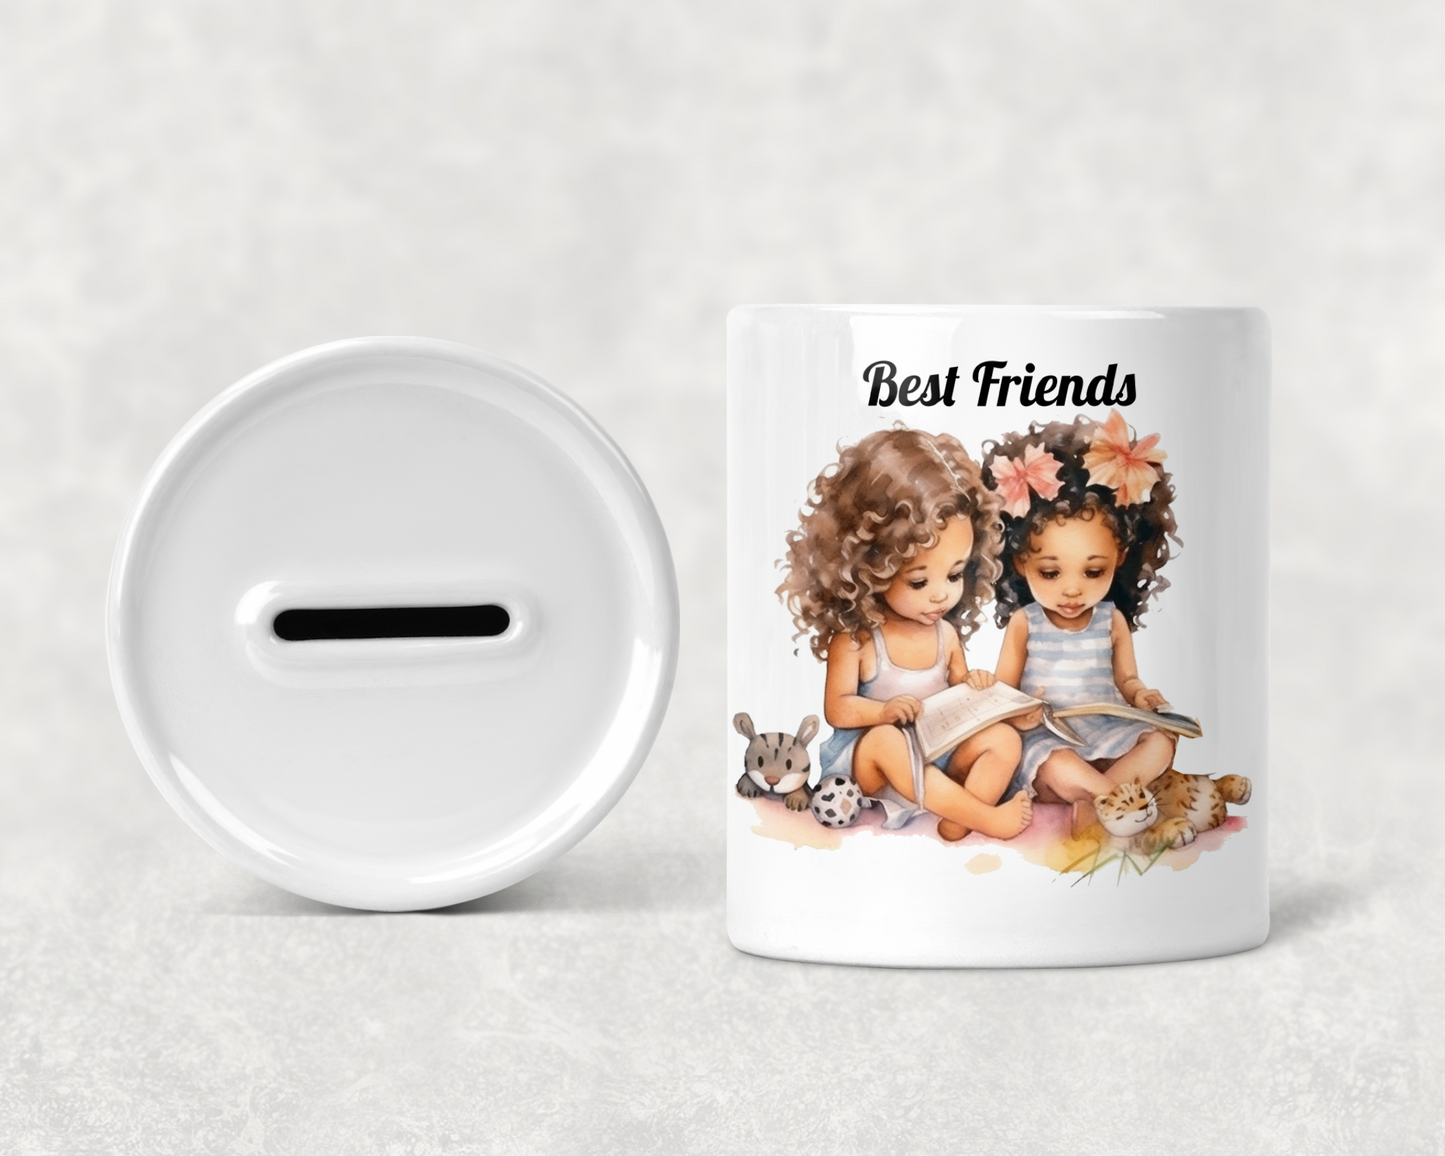  Best Friends Girls Money Box by Free Spirit Accessories sold by Free Spirit Accessories